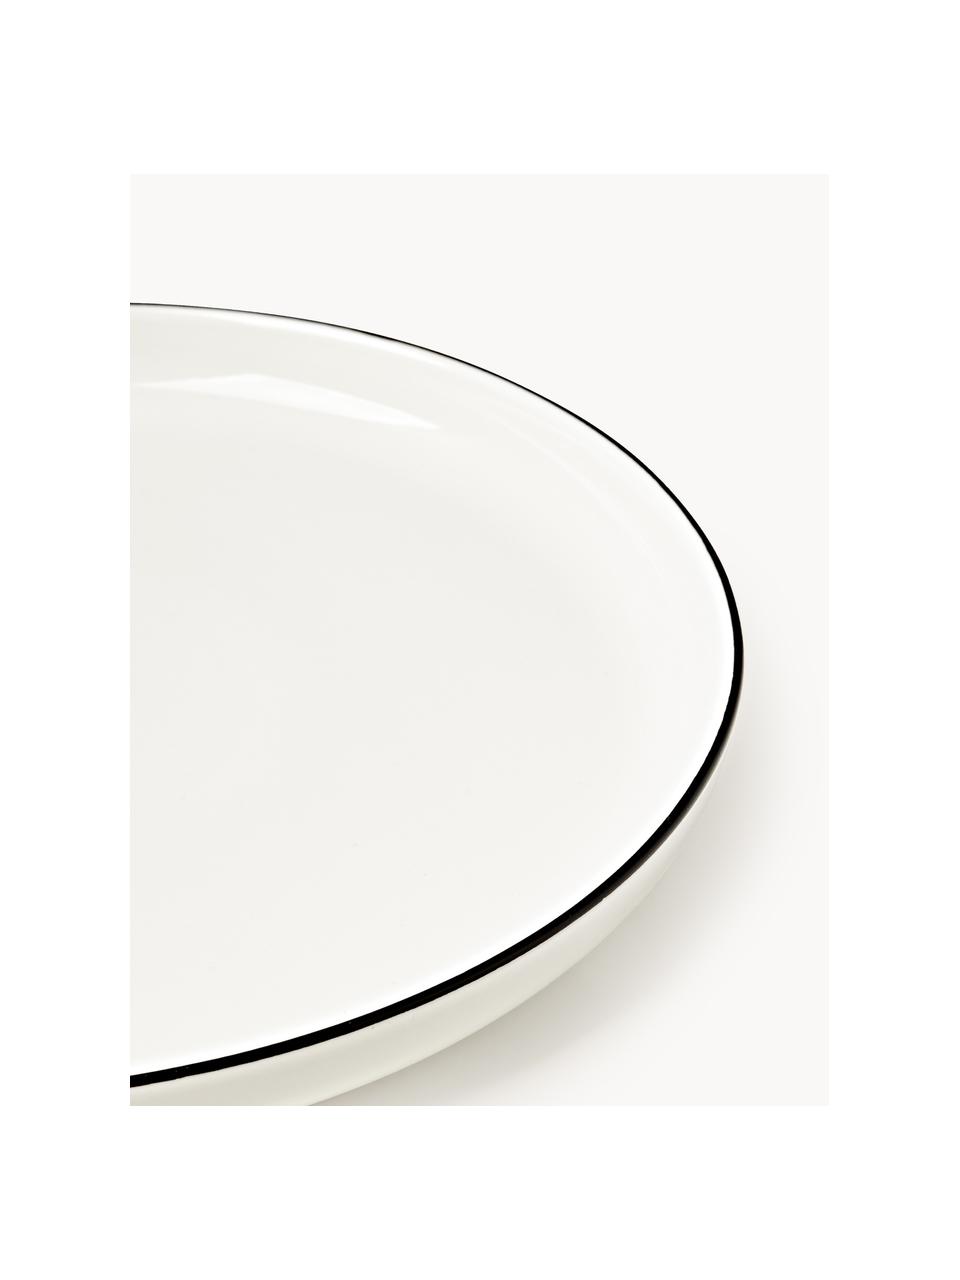 Porseleinen ontbijtborden Facile met rand, 2 stuks, Hoogwaardig hard porselein (ca. 50% kaolien, 25% kwarts en 25% veldspaat), Gebroken wit met zwarte rand, Ø 20 x H 2 cm